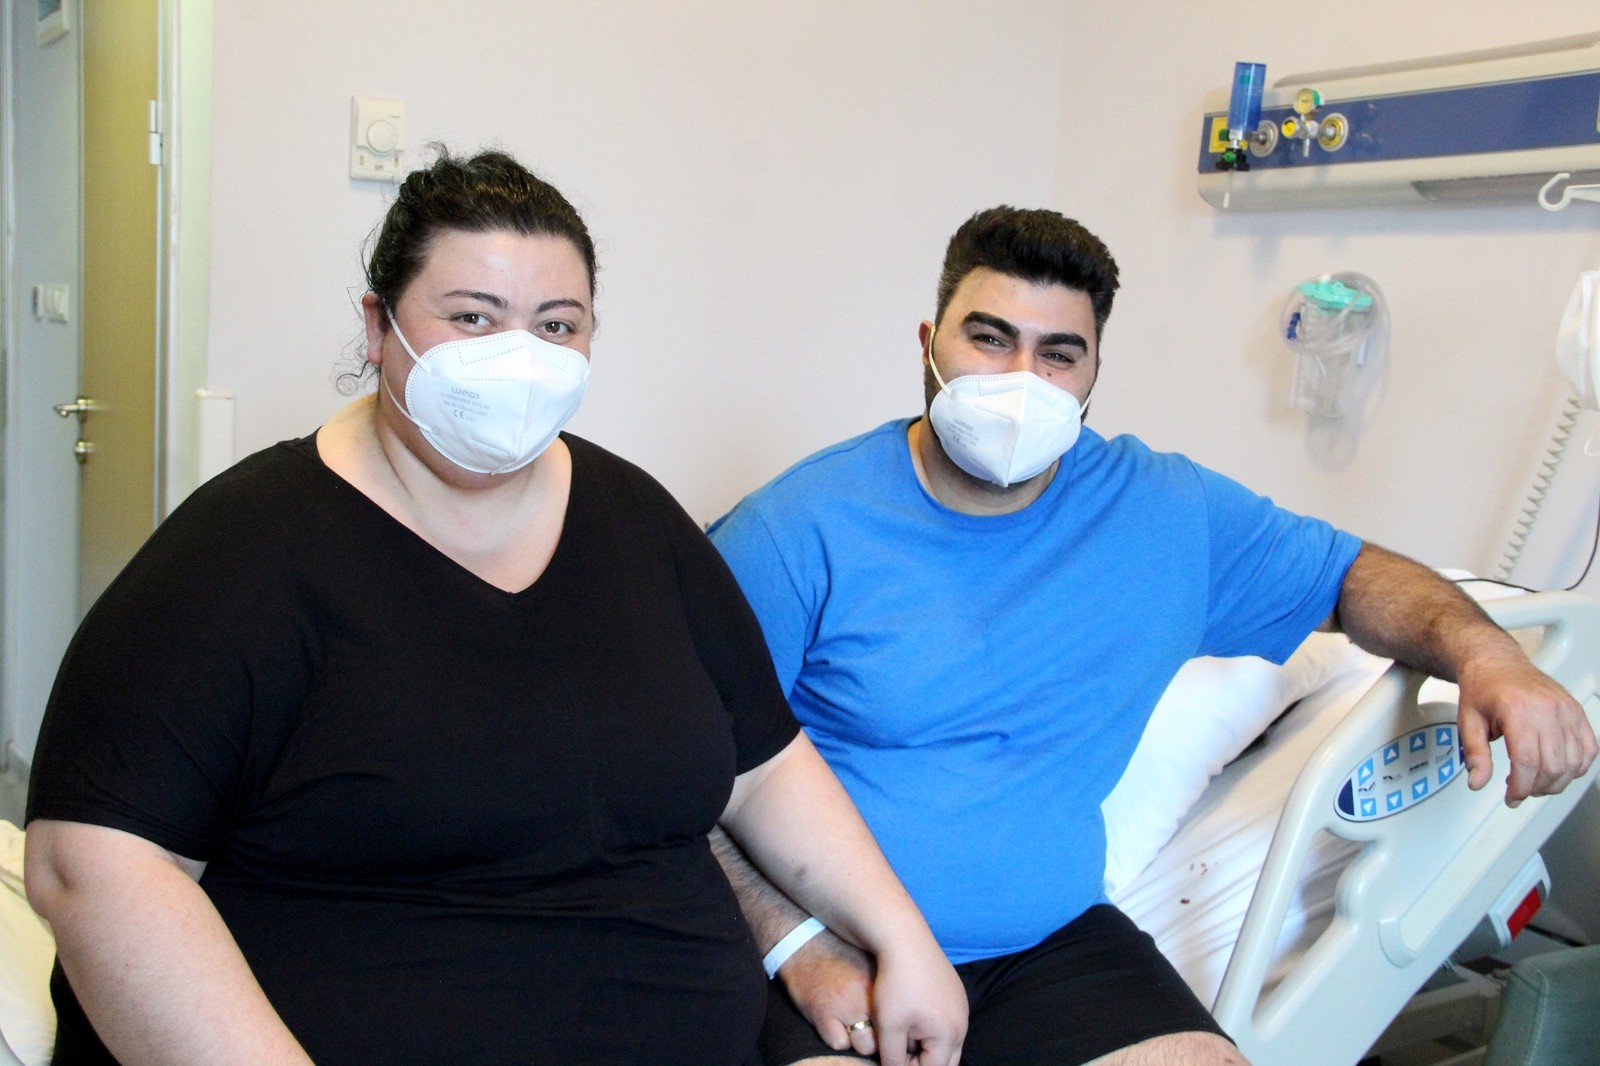 Almanya’da yaşayan ve obezite grubunda yer alan çift  bebek sahibi olabilmek için Antalya'da tüp mide ameliyatı oldu